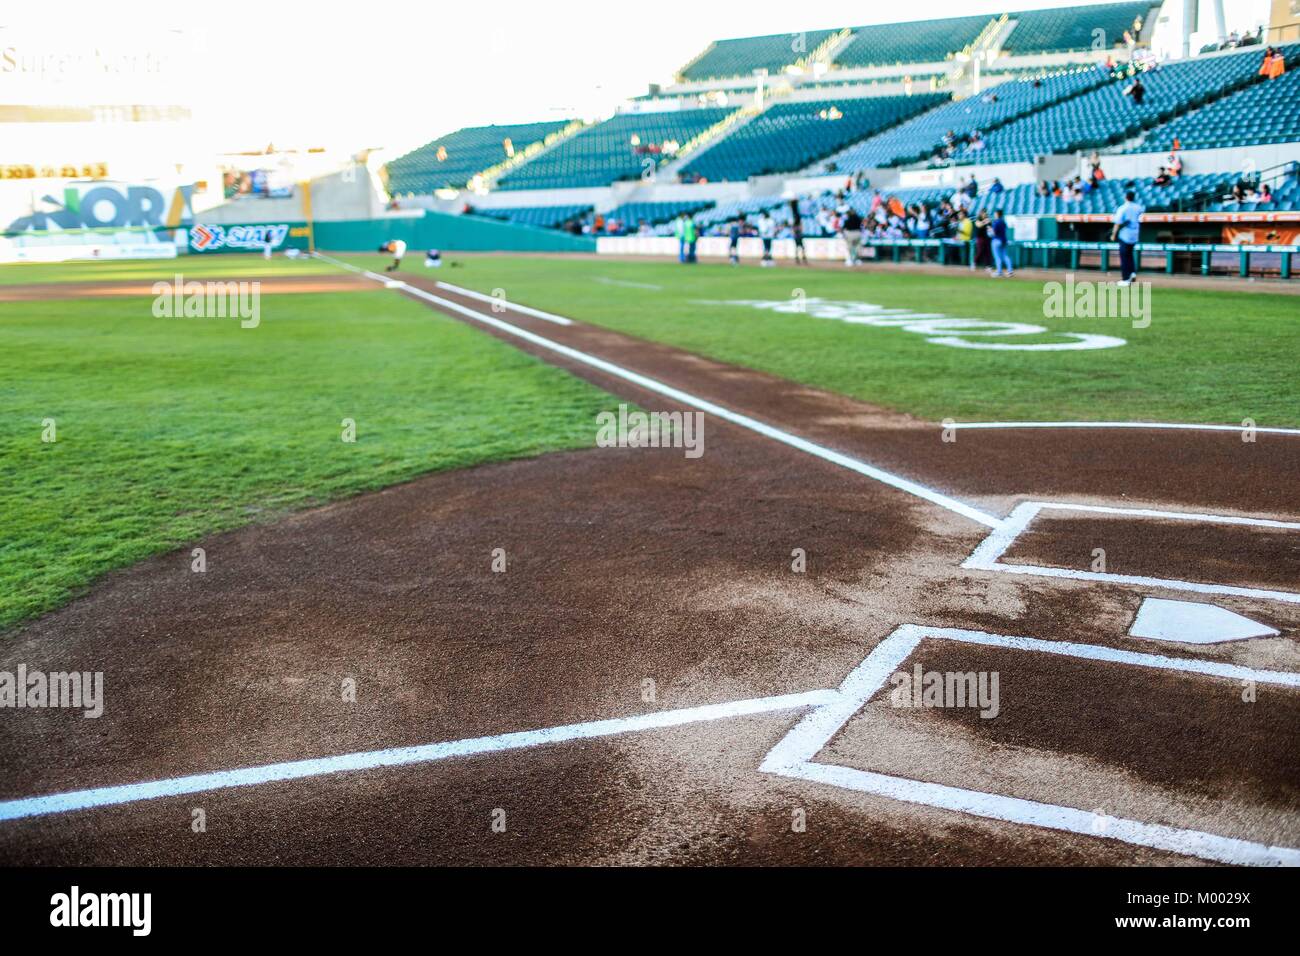 Detalle de la Tierra, Diamante, Home, Field, Bases y el Campo del Estadio Sonora, durante el juego de beisbol de la Liga Mexicana del Pacifico con e Stock Photo